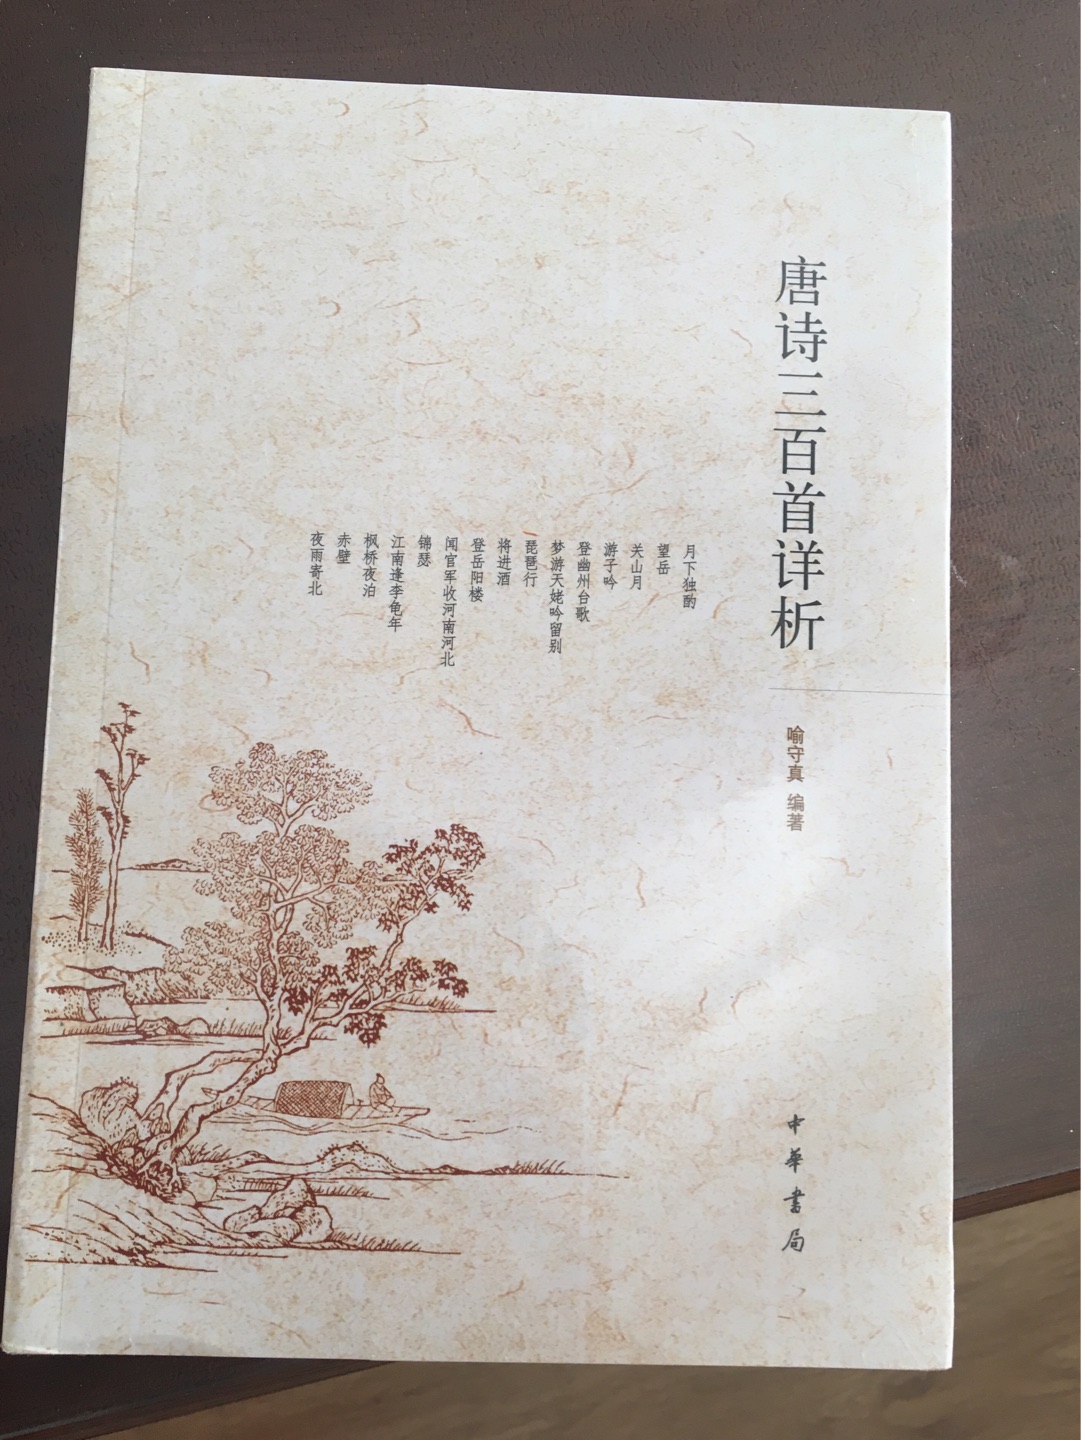 中华书局出版发行的书，太专业了。要花些时间去读。